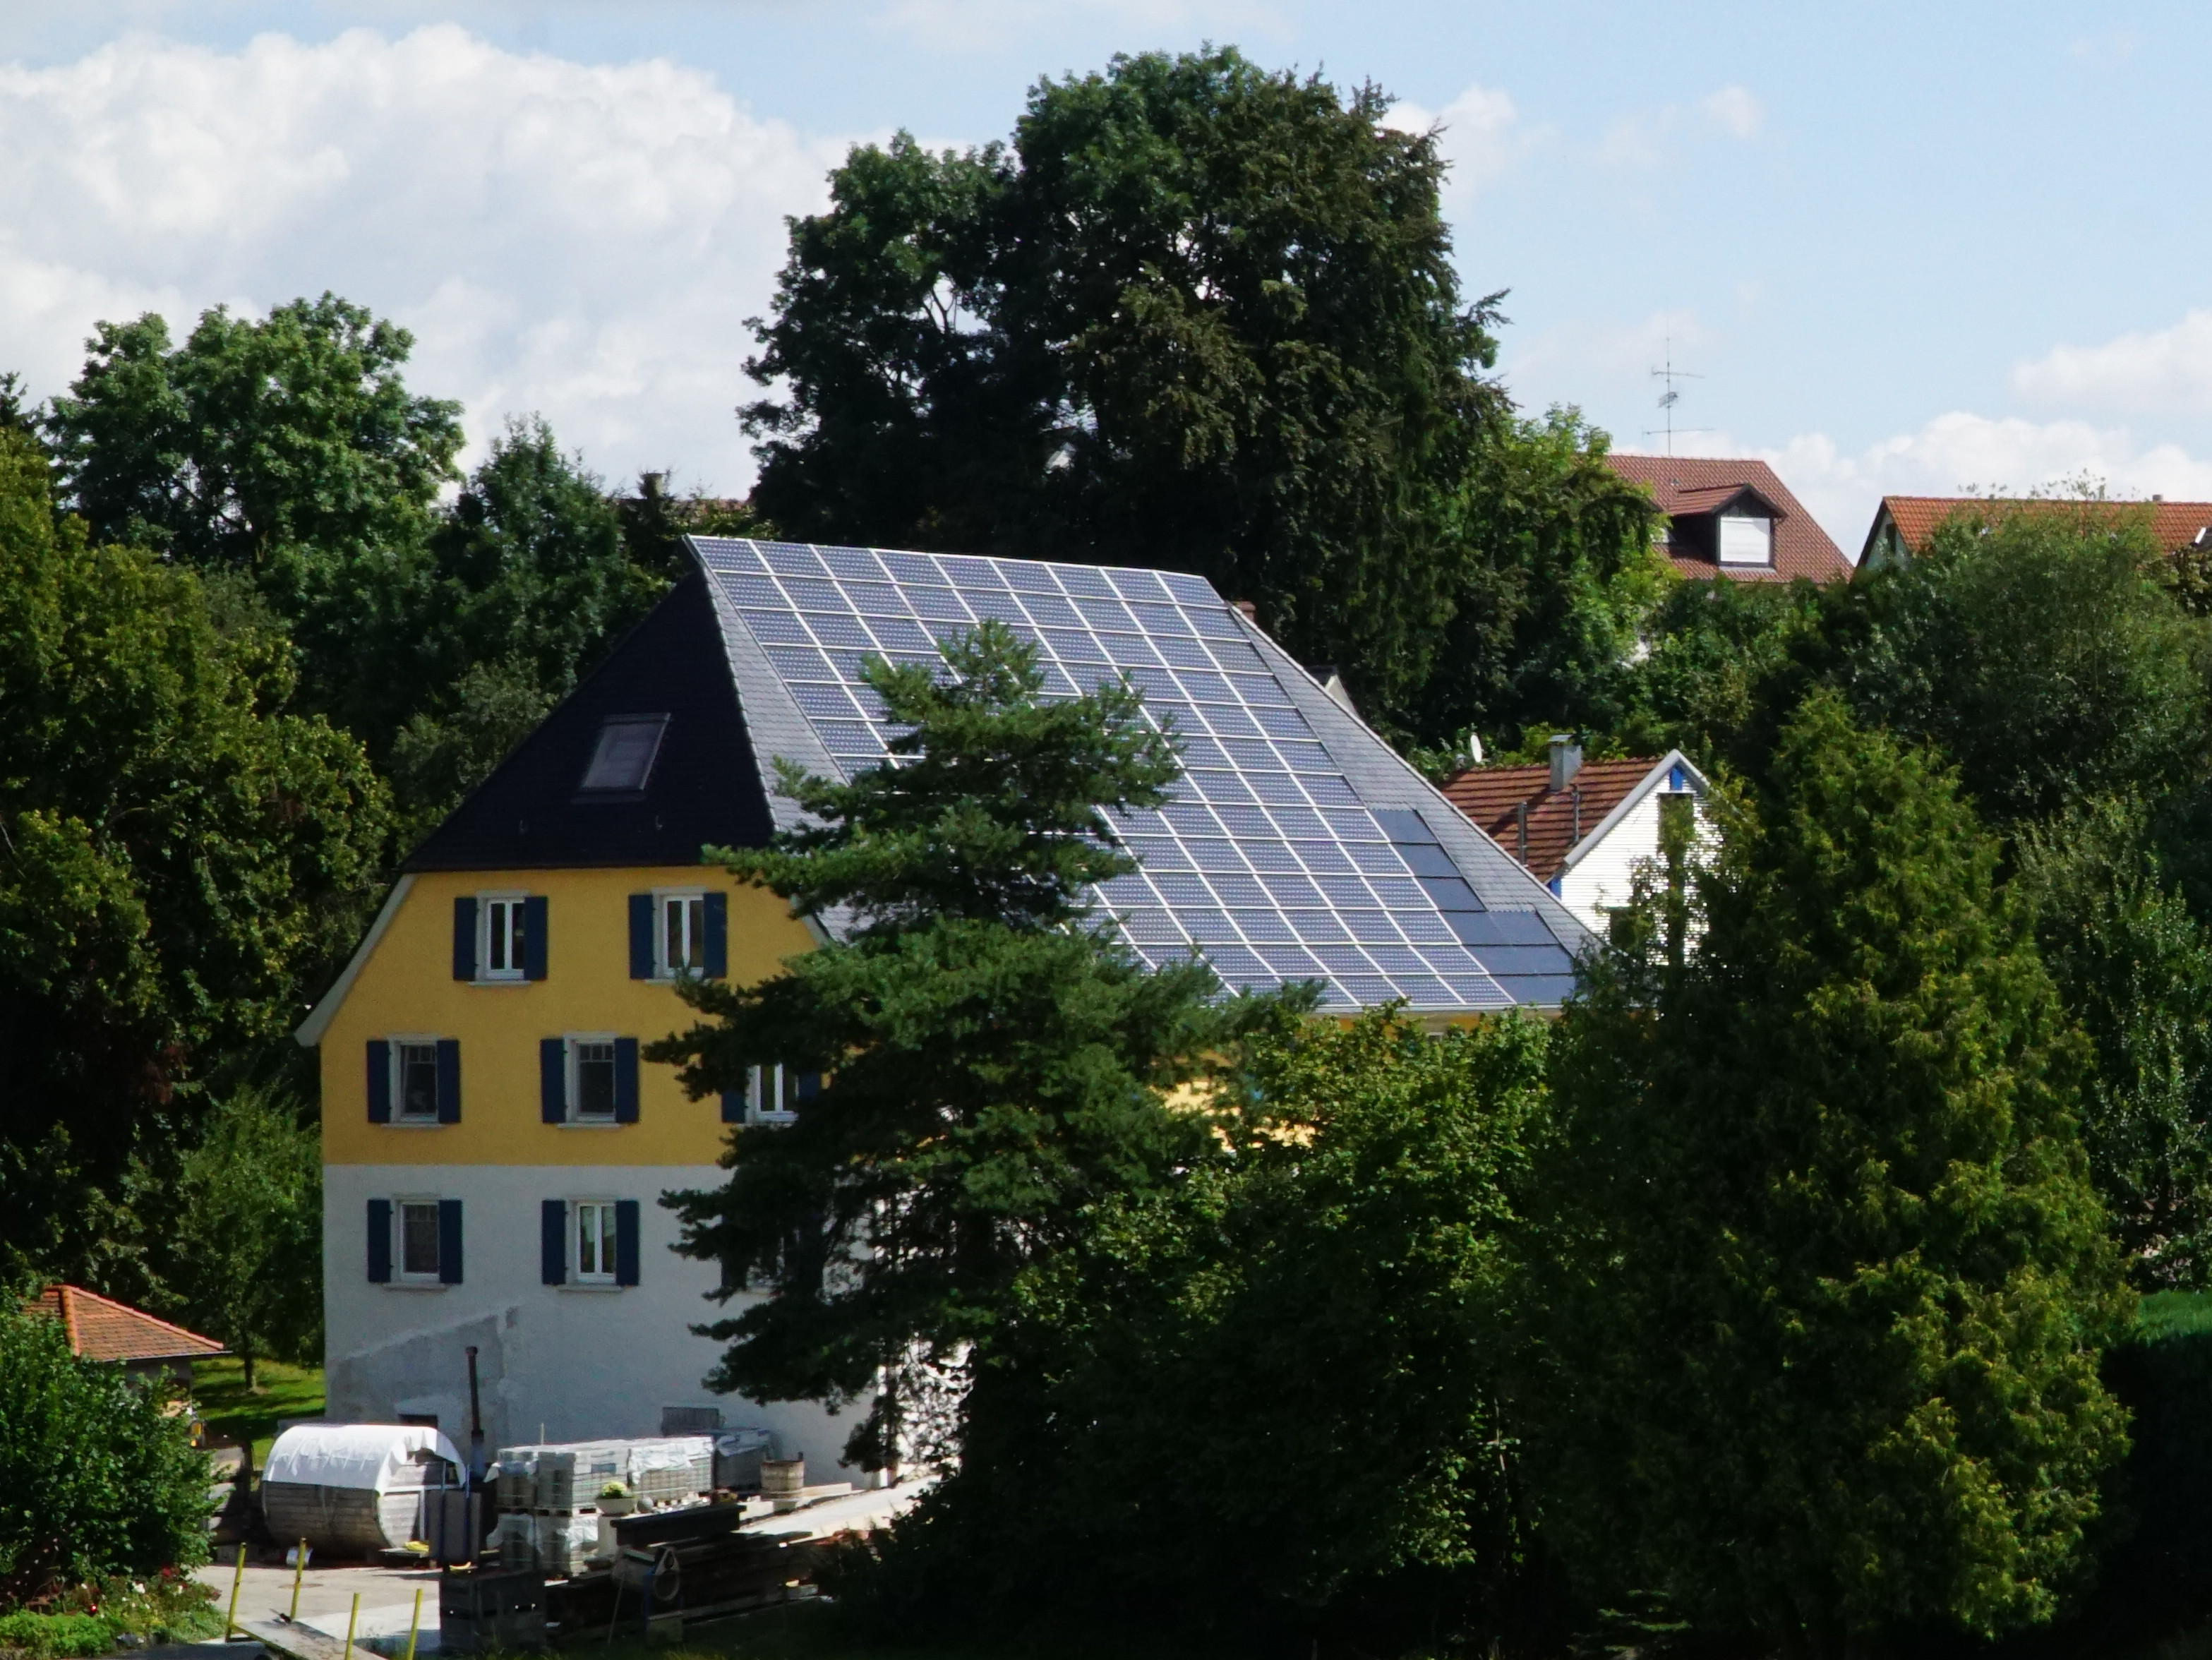  Ehemalige Mühle in Uigendorf jetzt privates Anwesen 